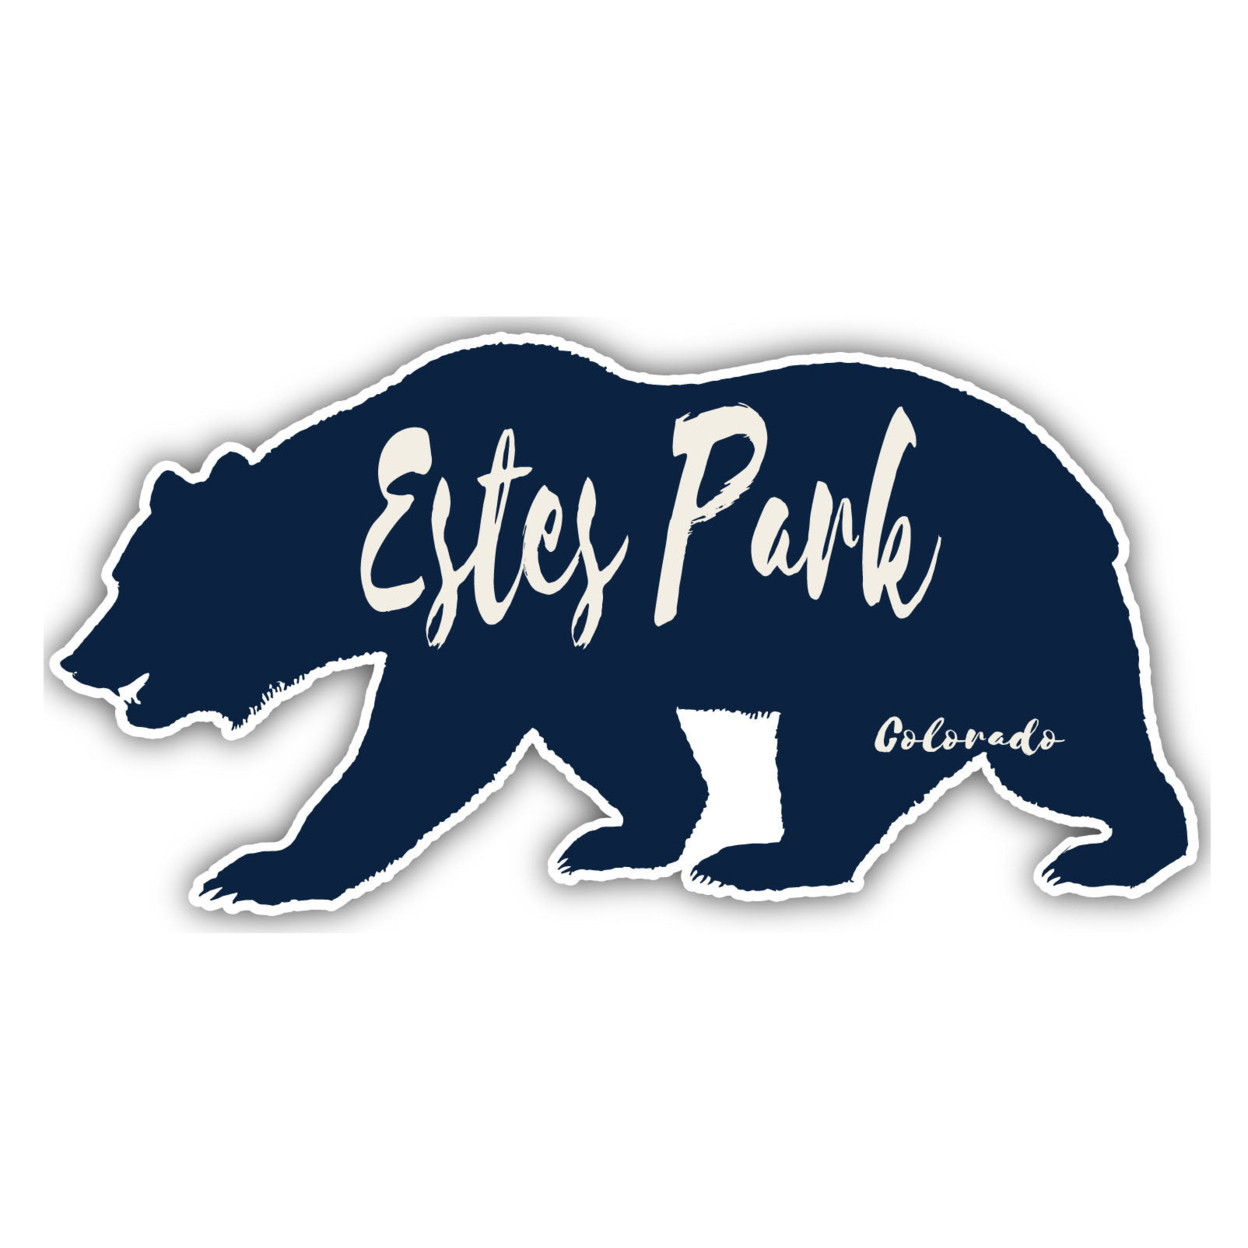 Estes Park Colorado Souvenir Decorative Stickers (Choose Theme And Size) - Single Unit, 2-Inch, Bear